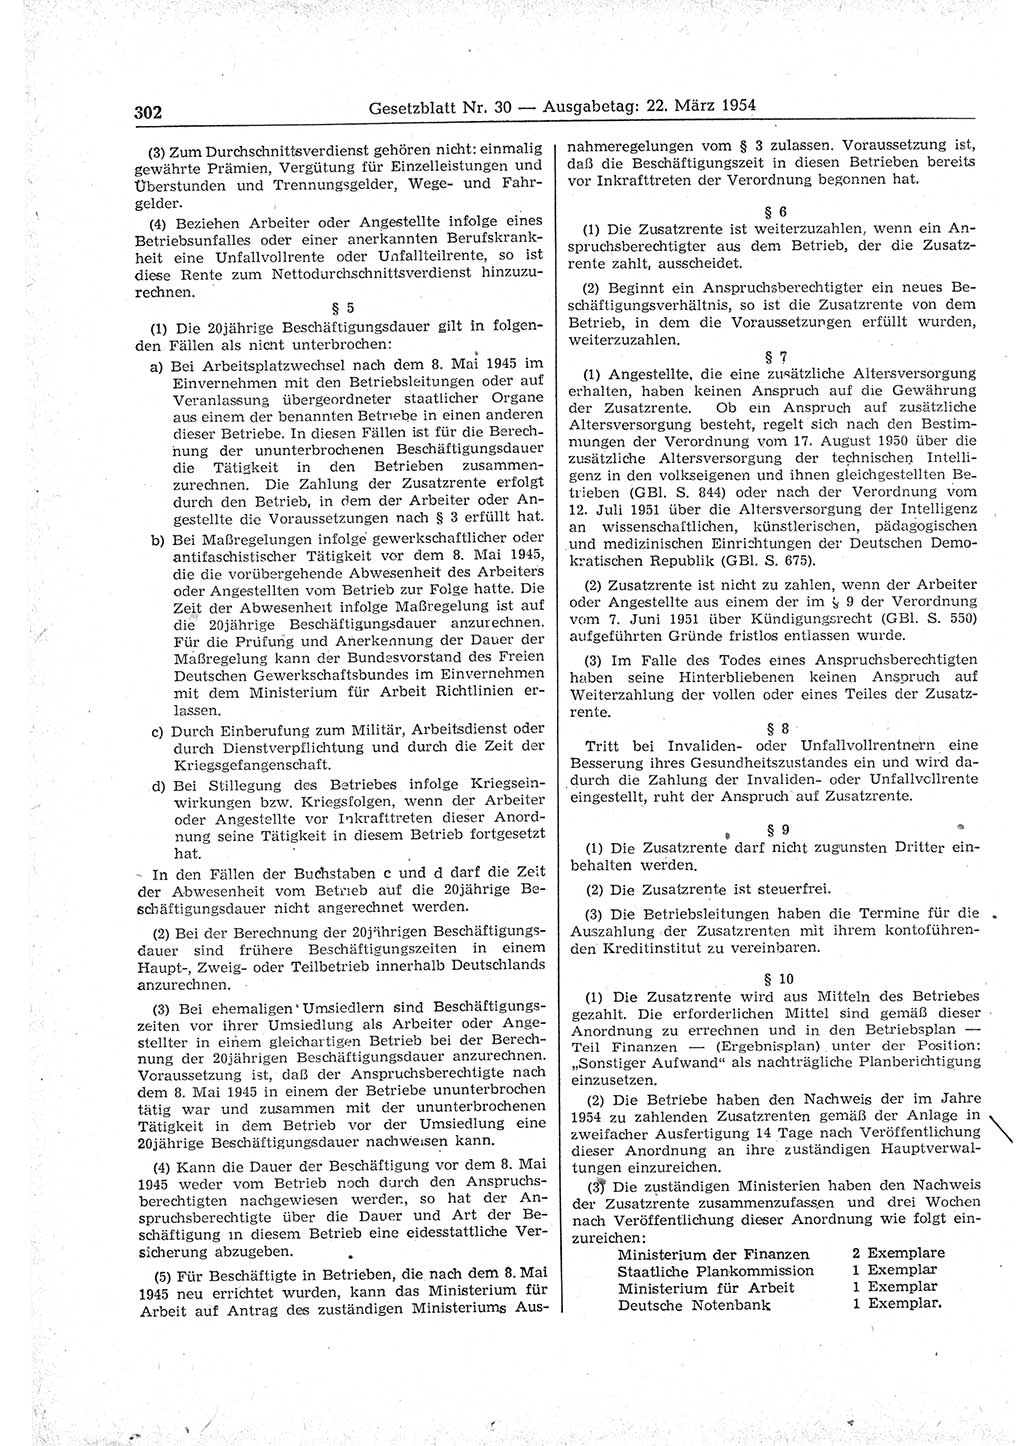 Gesetzblatt (GBl.) der Deutschen Demokratischen Republik (DDR) 1954, Seite 302 (GBl. DDR 1954, S. 302)